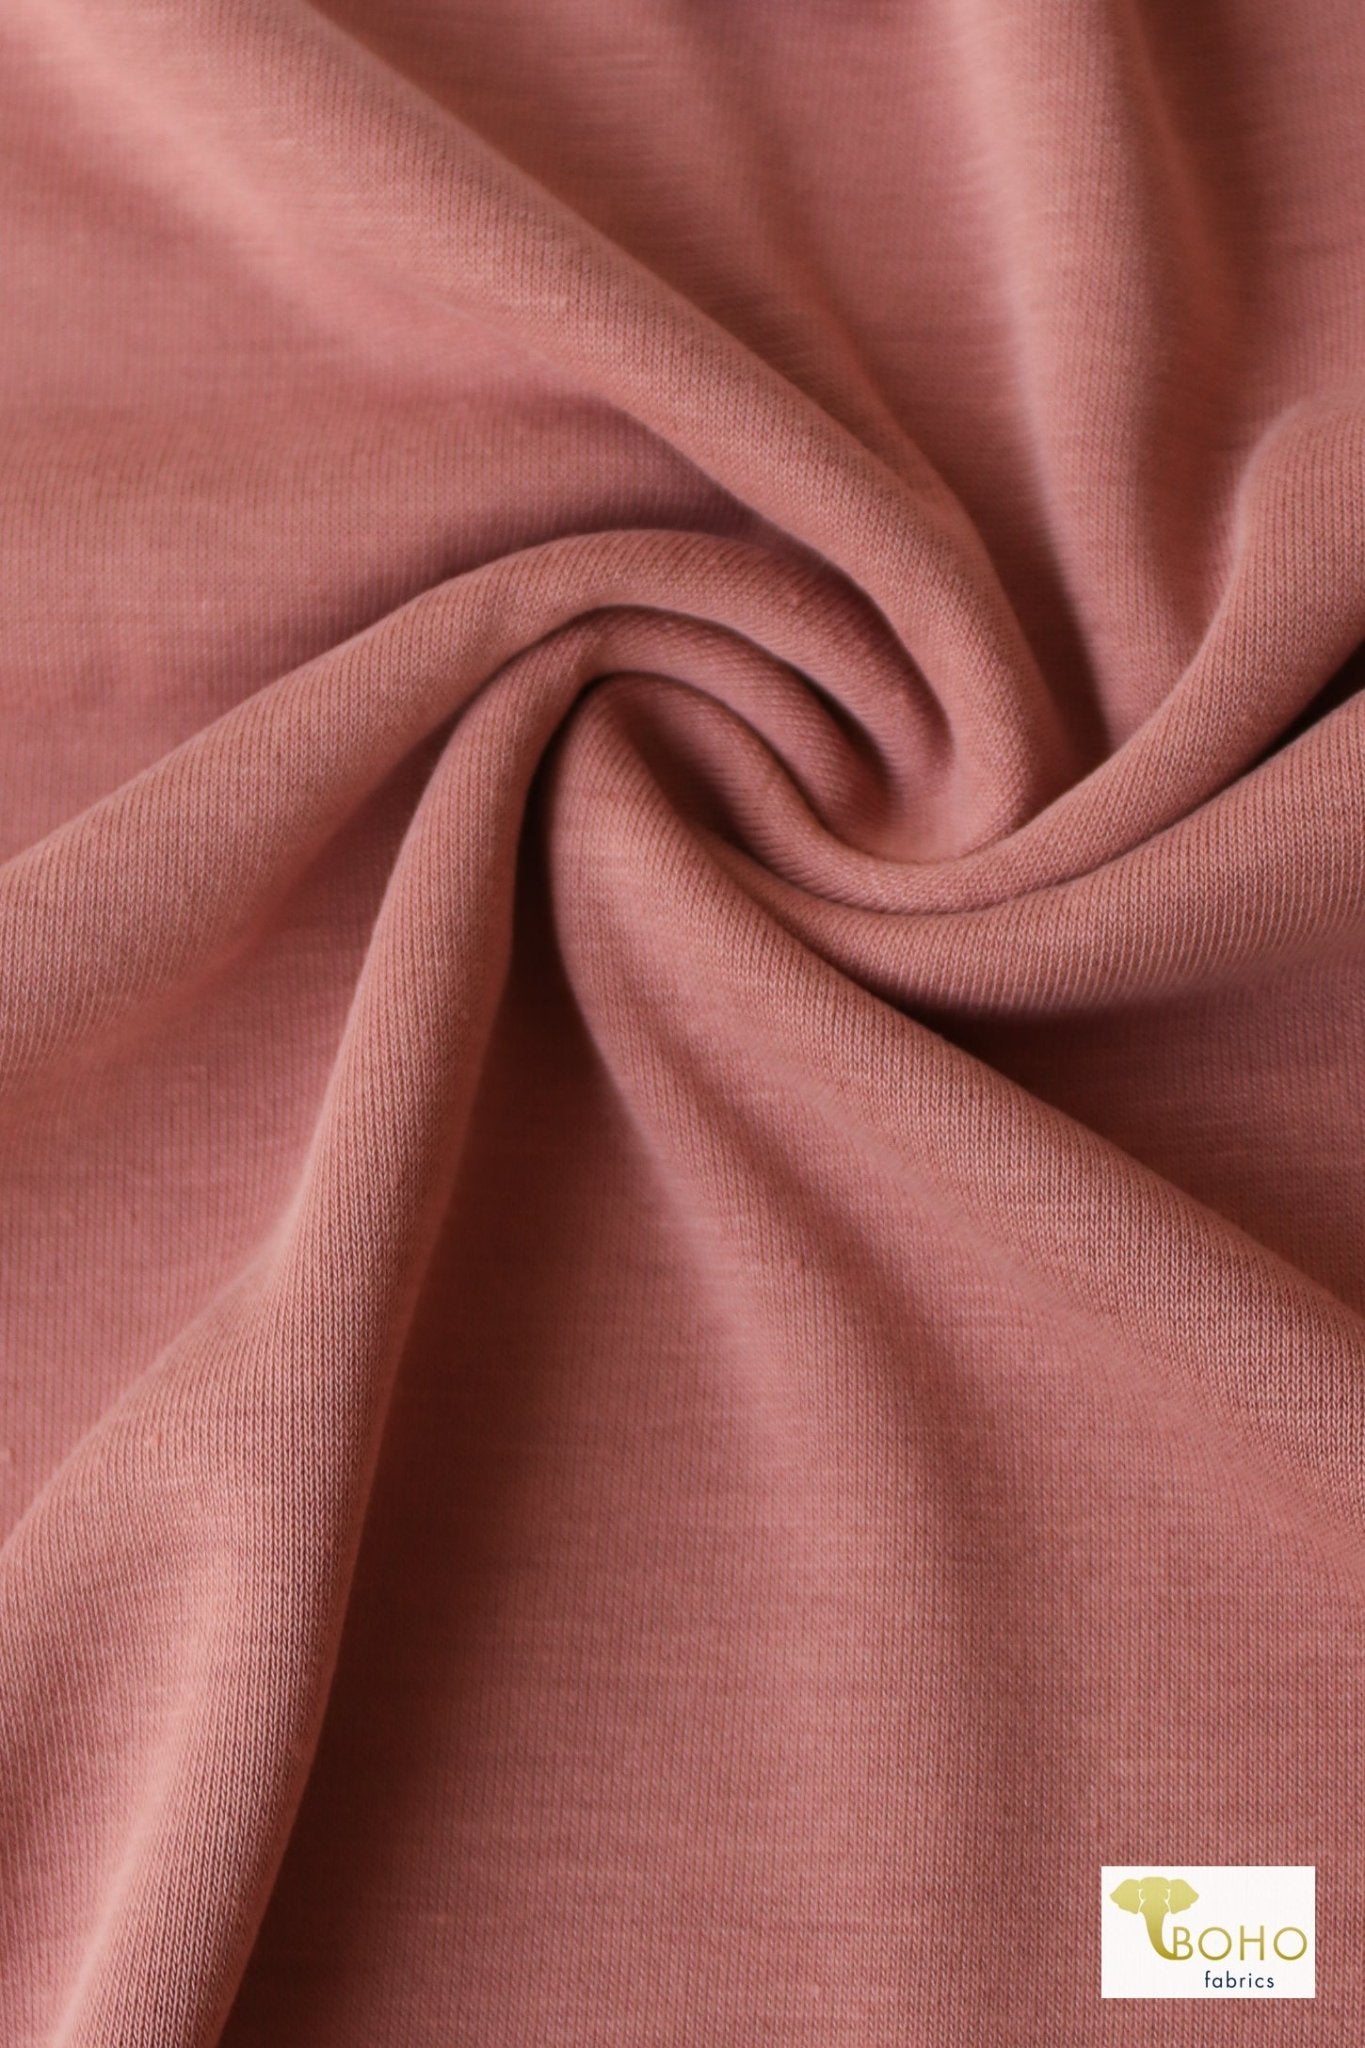 Rosette Pink. Cupro Knit. - Boho Fabrics